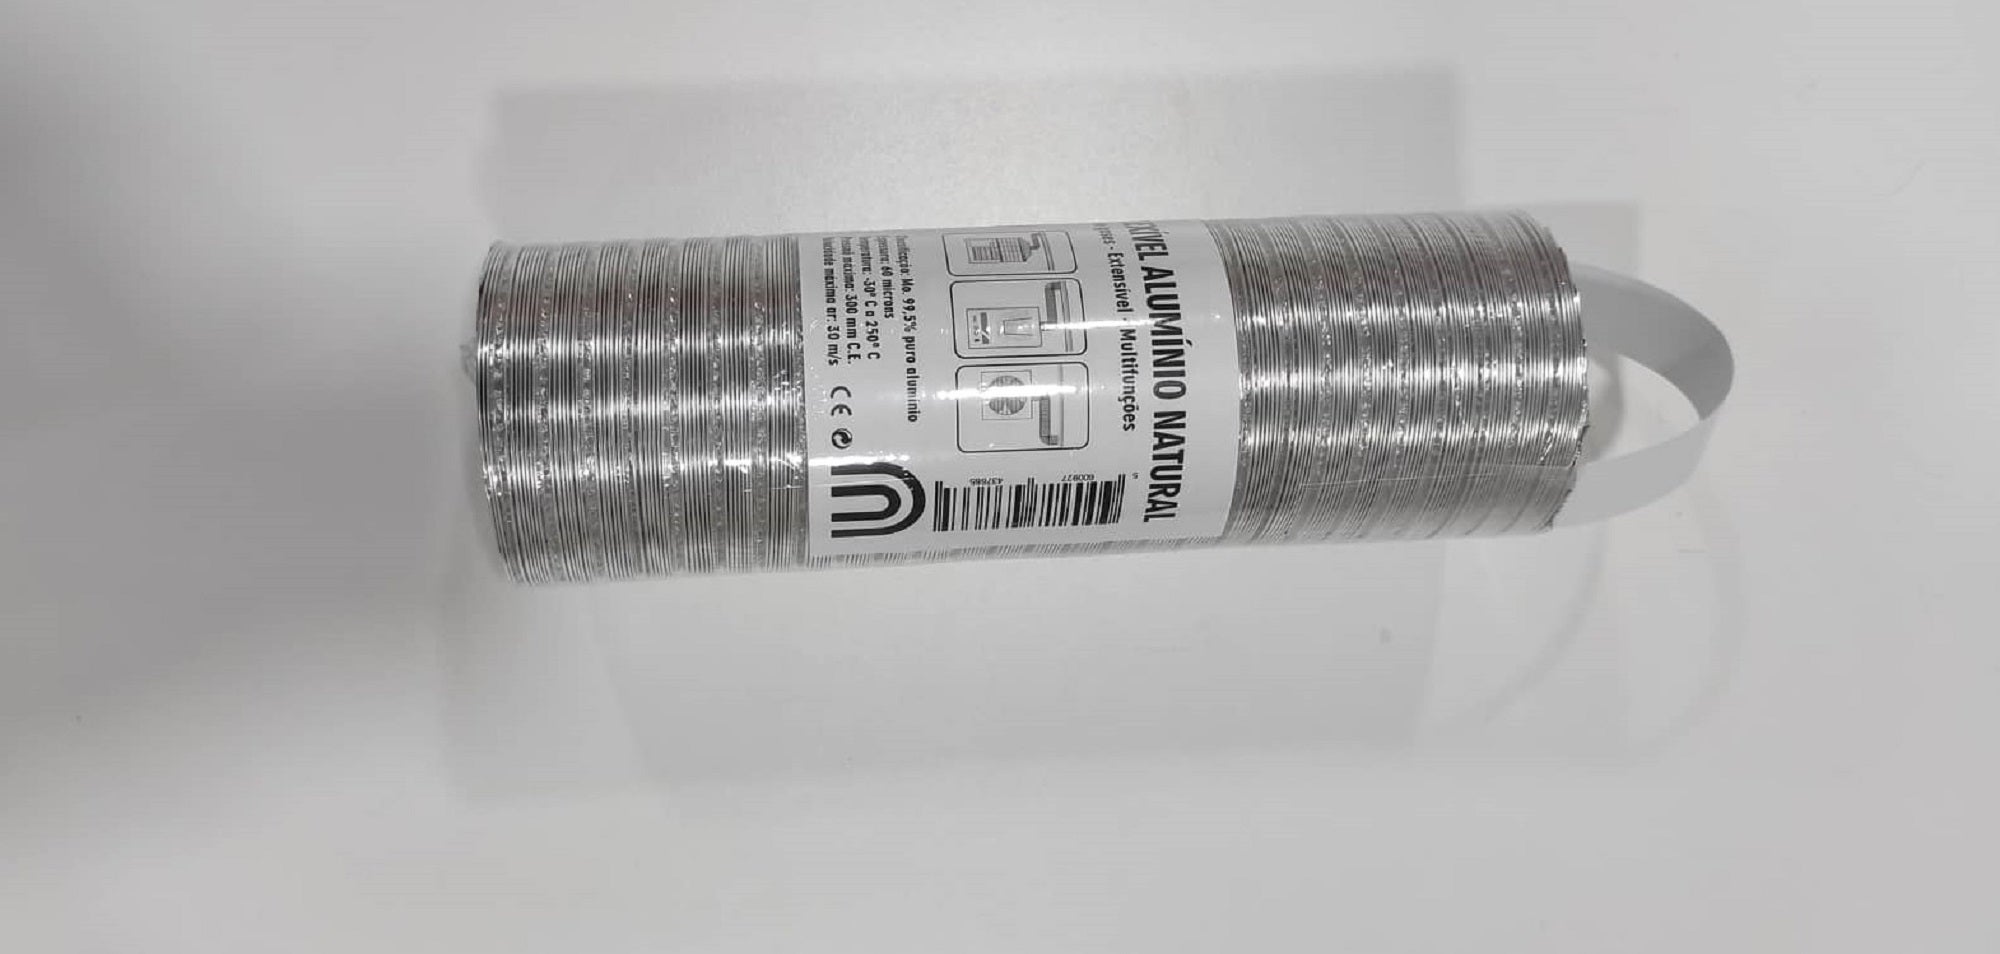 Metro tubo flexible aluminio d 100 compact